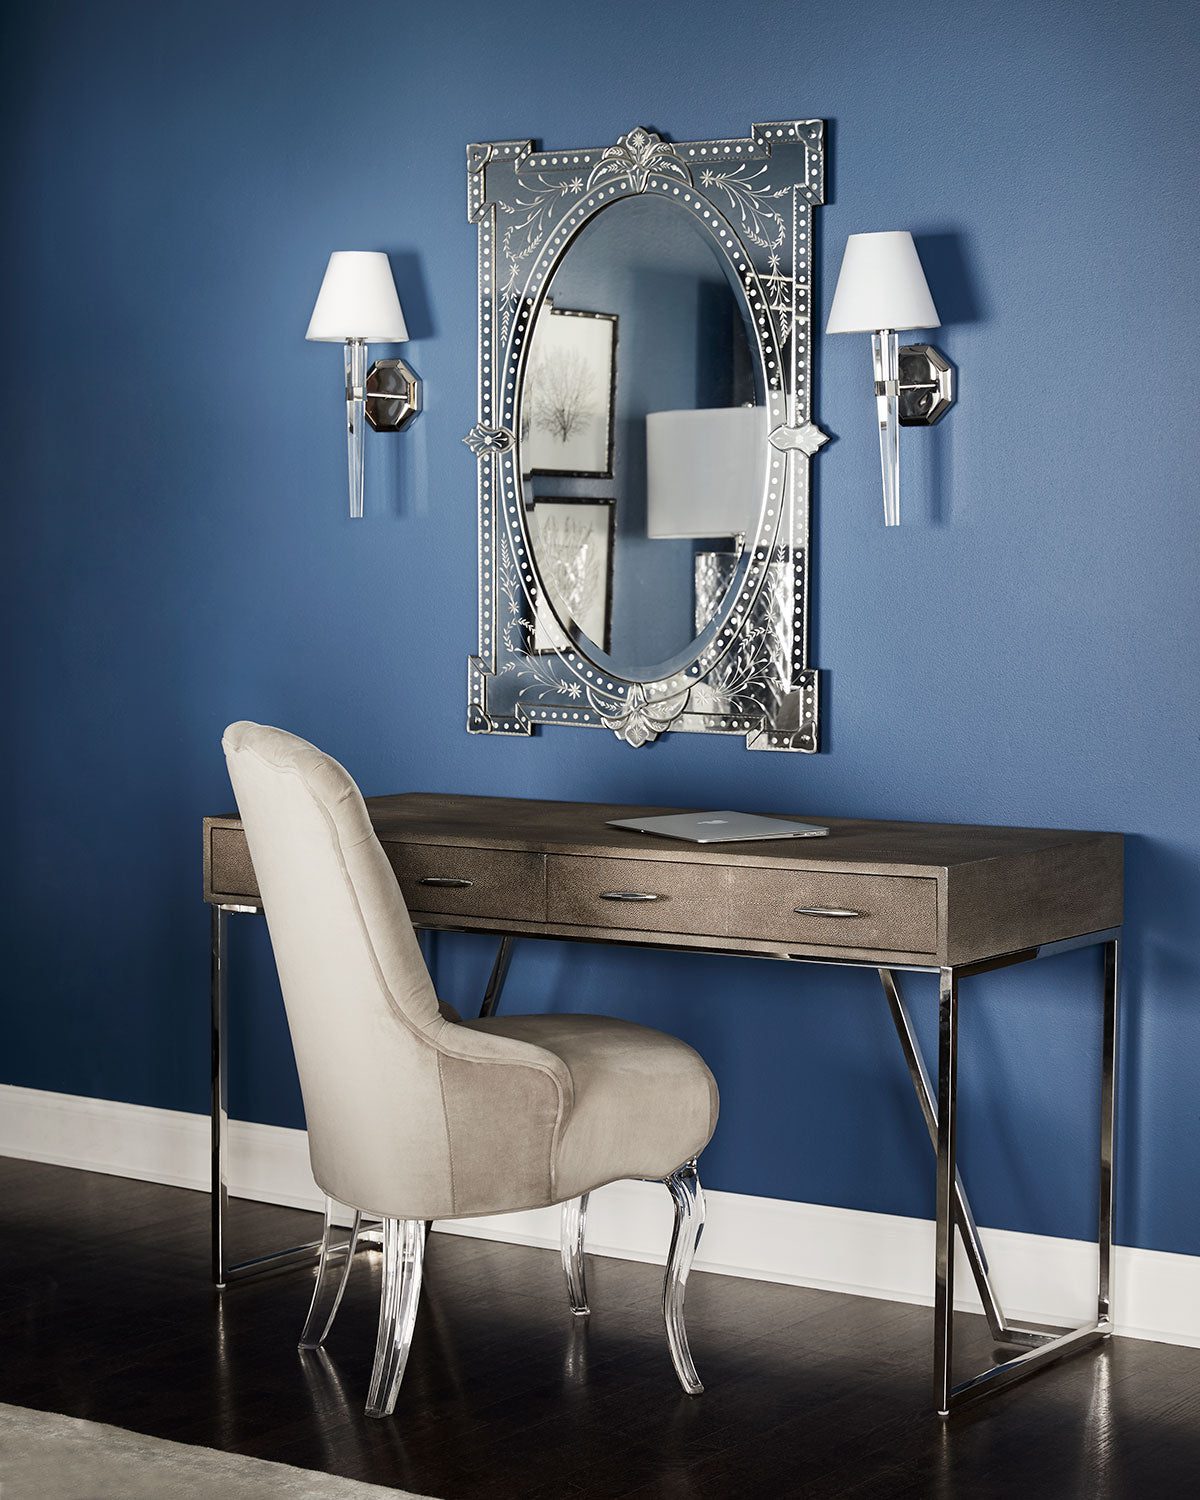 Зеркало в венецианском стиле "Пьетро" (над консолью, в интерьере)